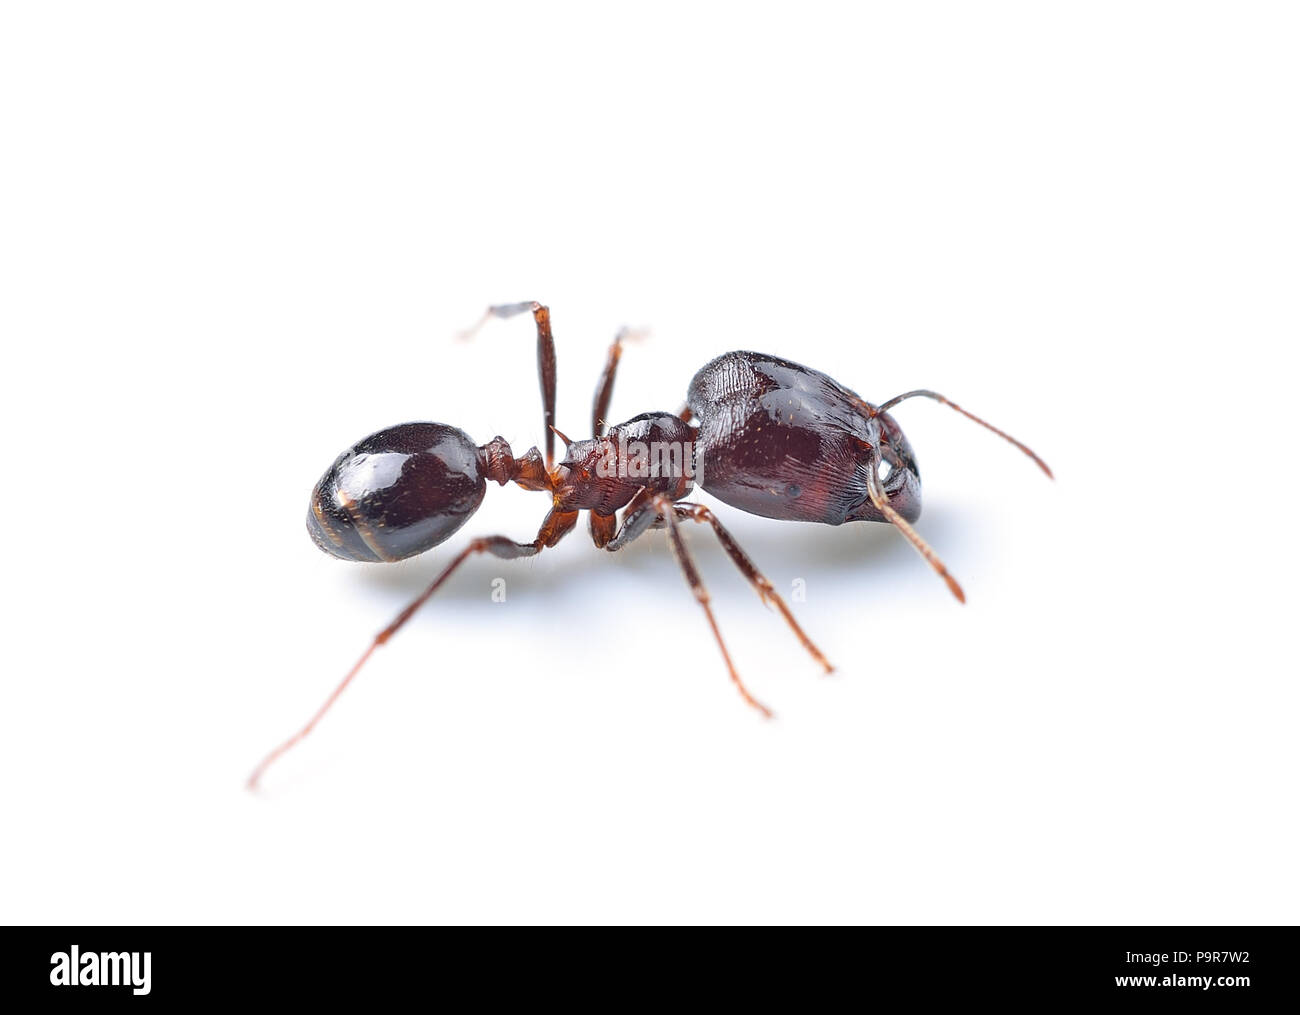 black ant isolated on white background Stock Photo